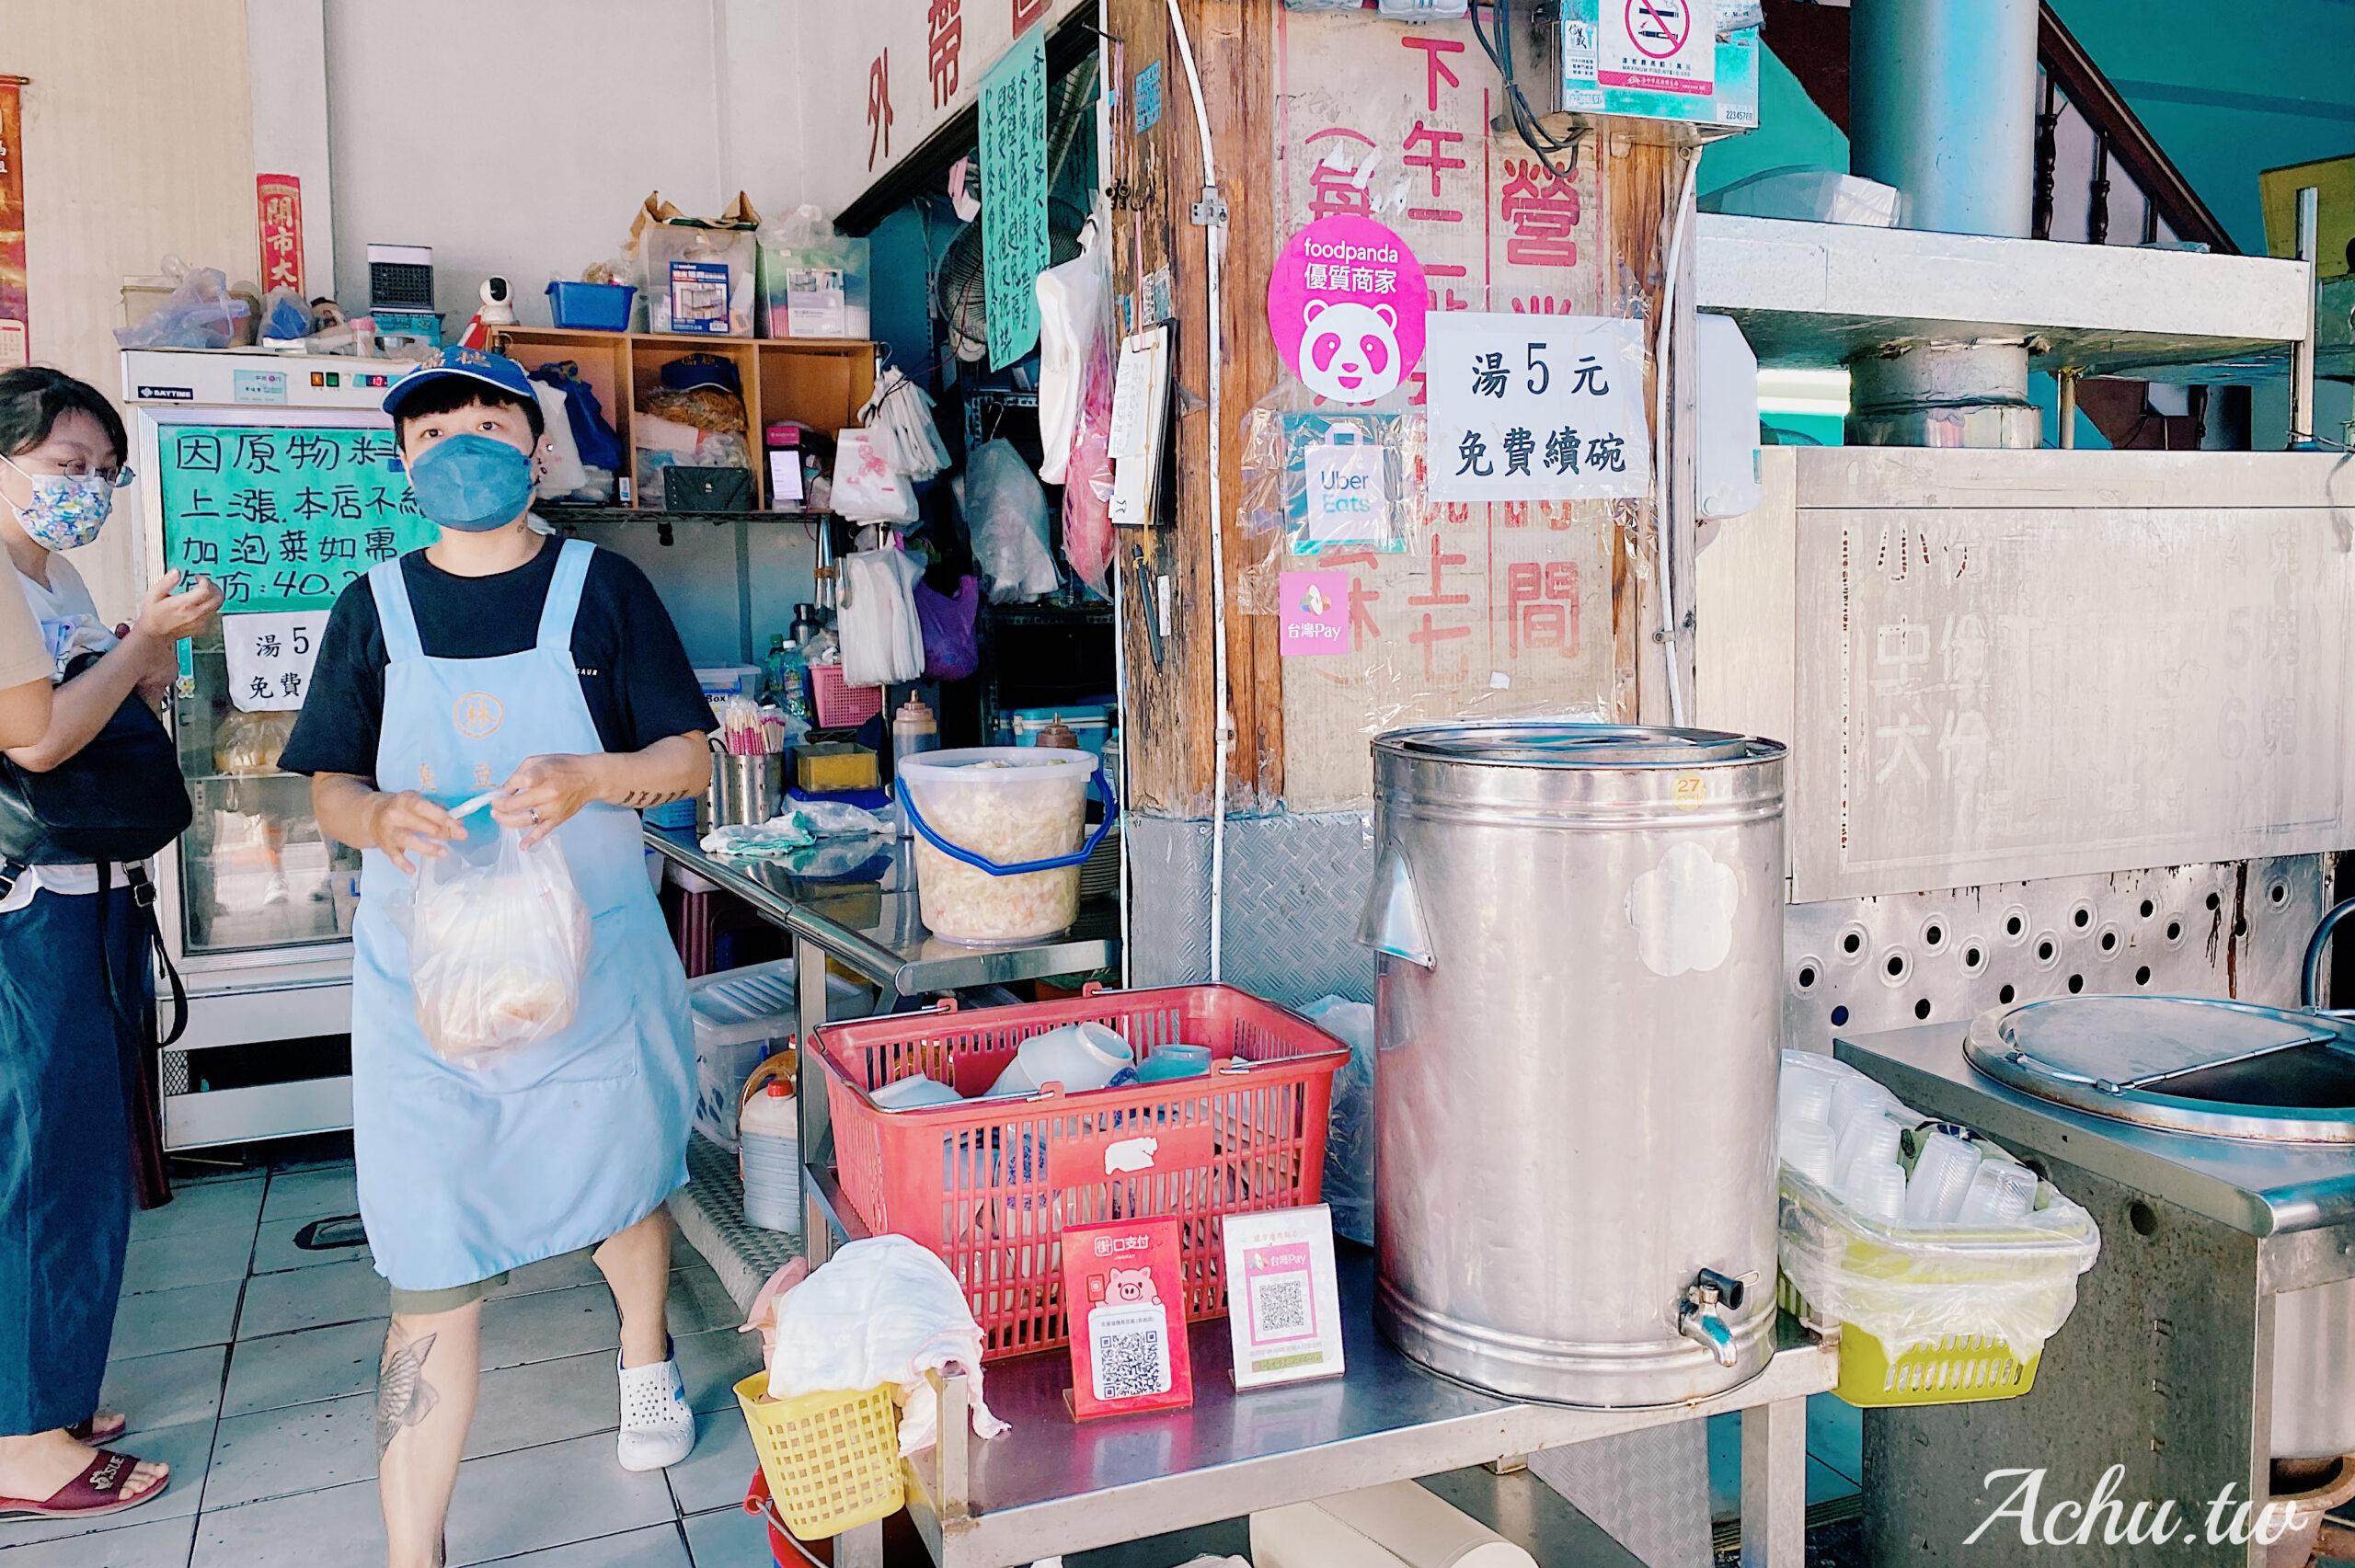 【台中東區美食】花蓮水尾臭豆腐 台中自由店 有夠臭 每天只賣五個半小時 (菜單)